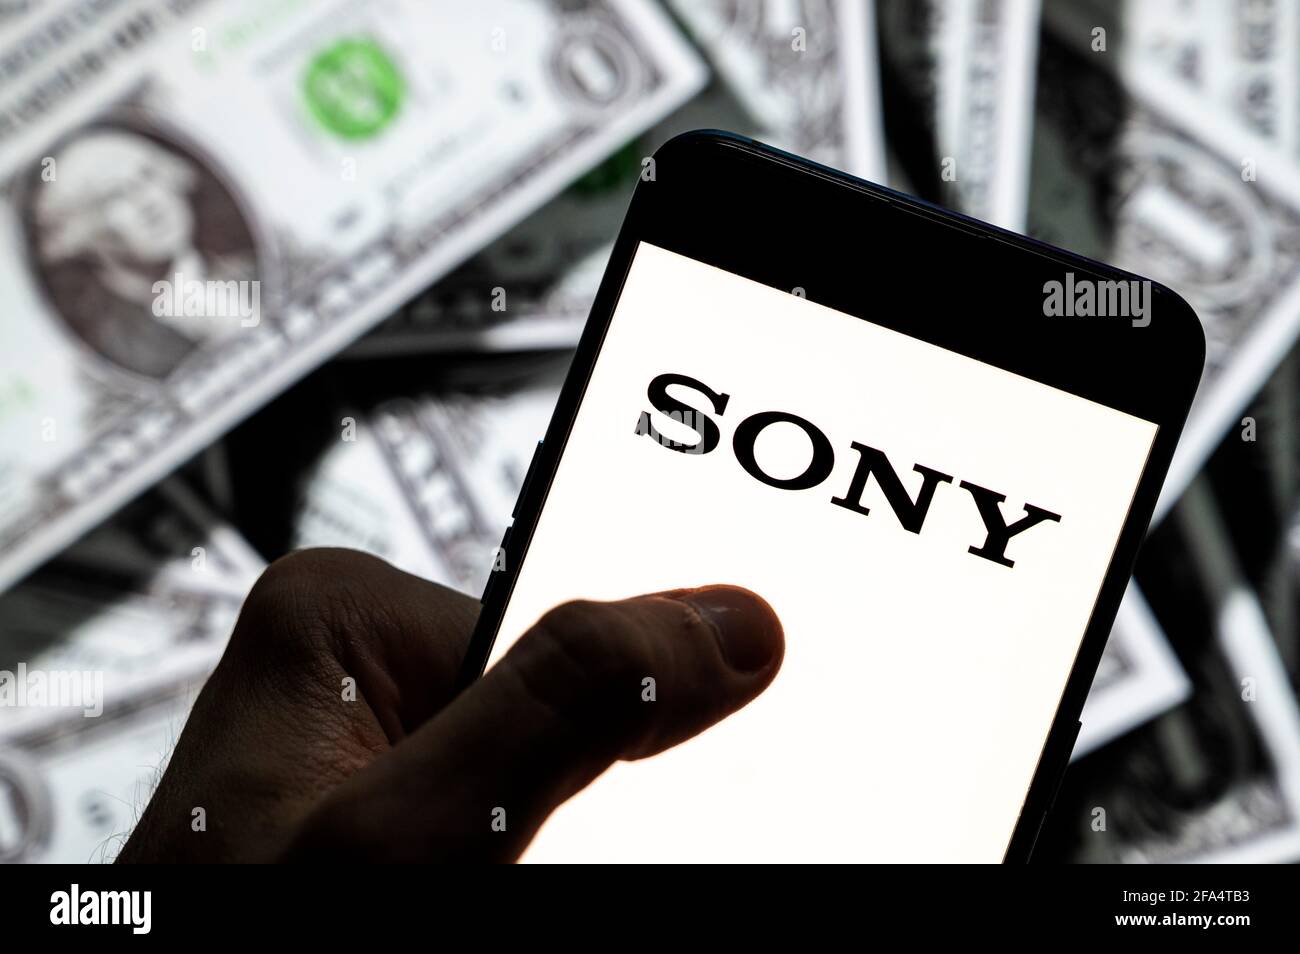 Dans cette photo illustration, le logo Sony de la société multinationale japonaise de technologie vu sur un écran d'appareil mobile Android avec la devise de l'icône dollar des États-Unis, symbole d'icône $ en arrière-plan. Banque D'Images